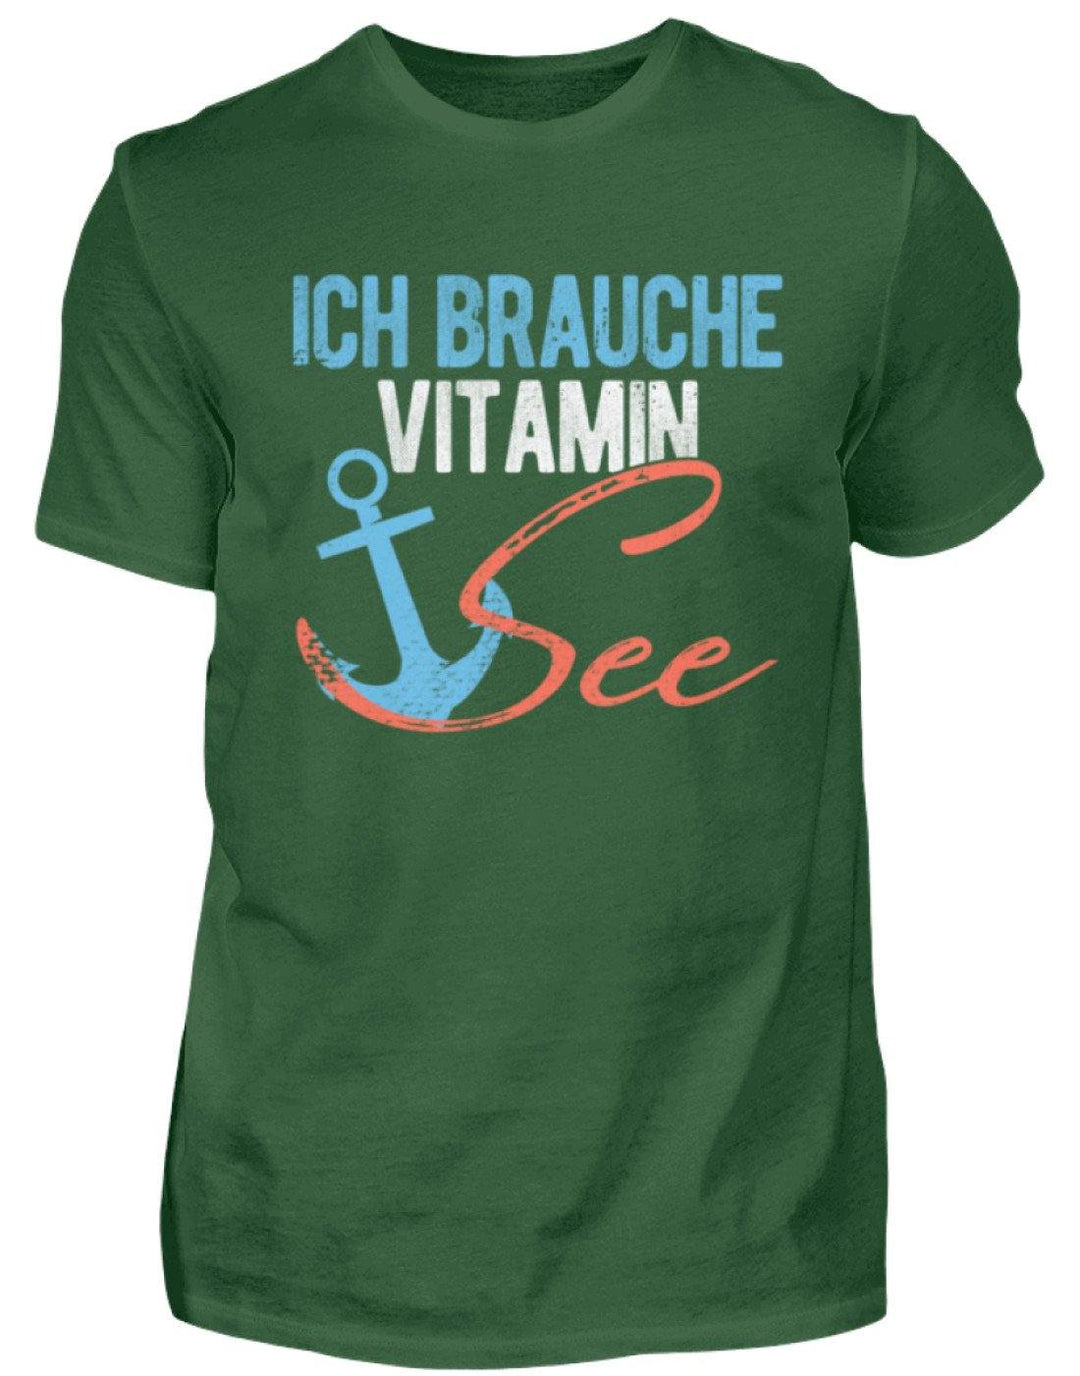 Vitamin See - Norddeutsch   - Herren Shirt - Words on Shirts Sag es mit dem Mittelfinger Shirts Hoodies Sweatshirt Taschen Gymsack Spruch Sprüche Statement